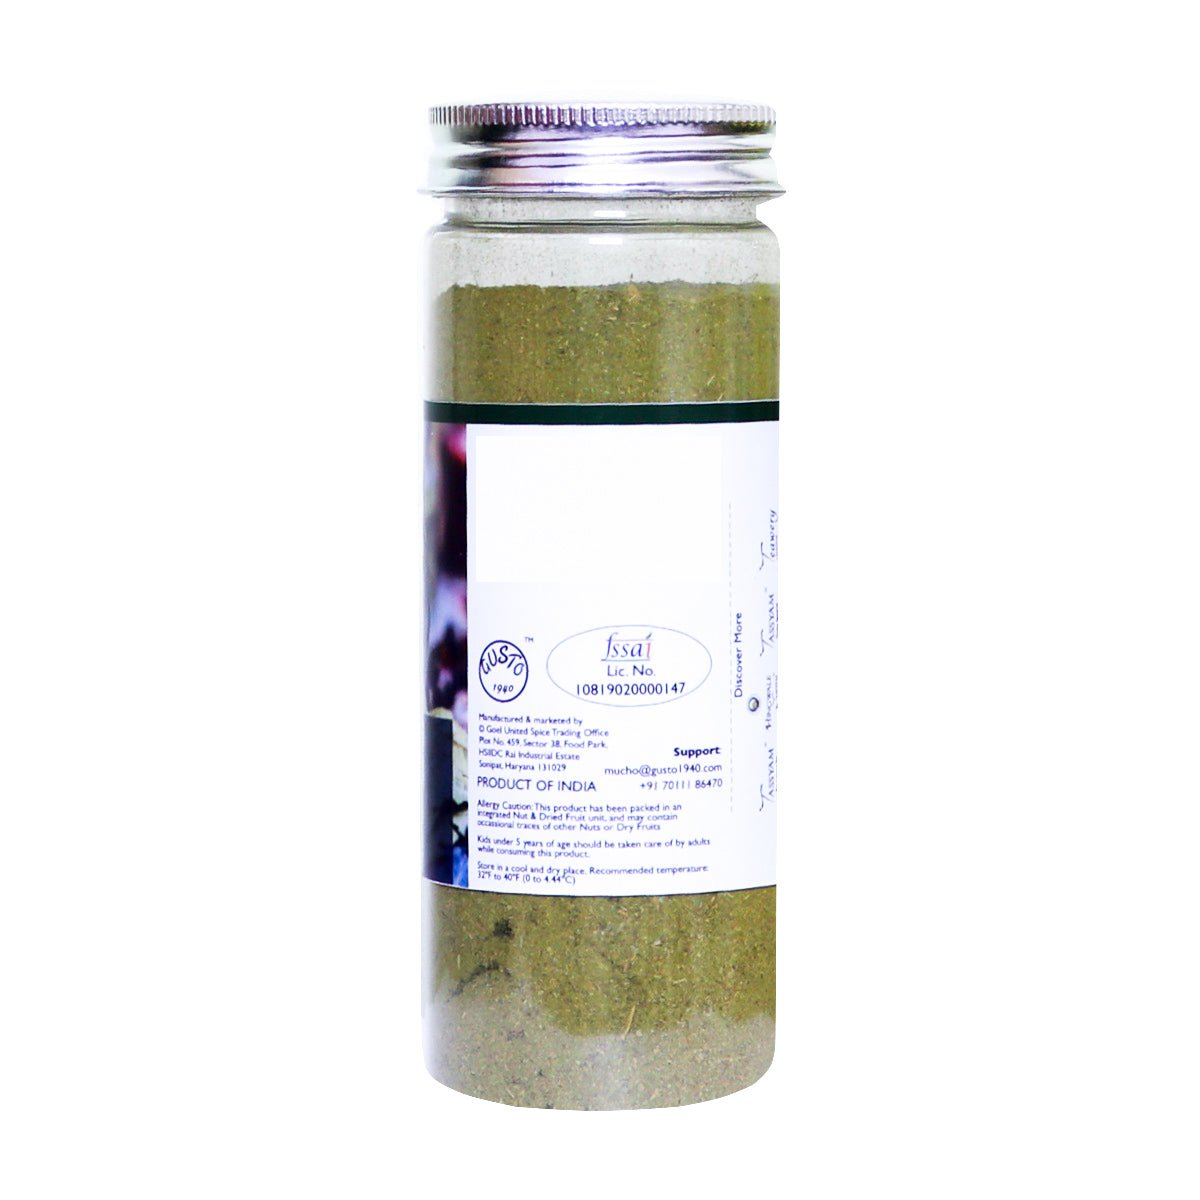 Strong Bay Leaf powder 100g - Tassyam Organics